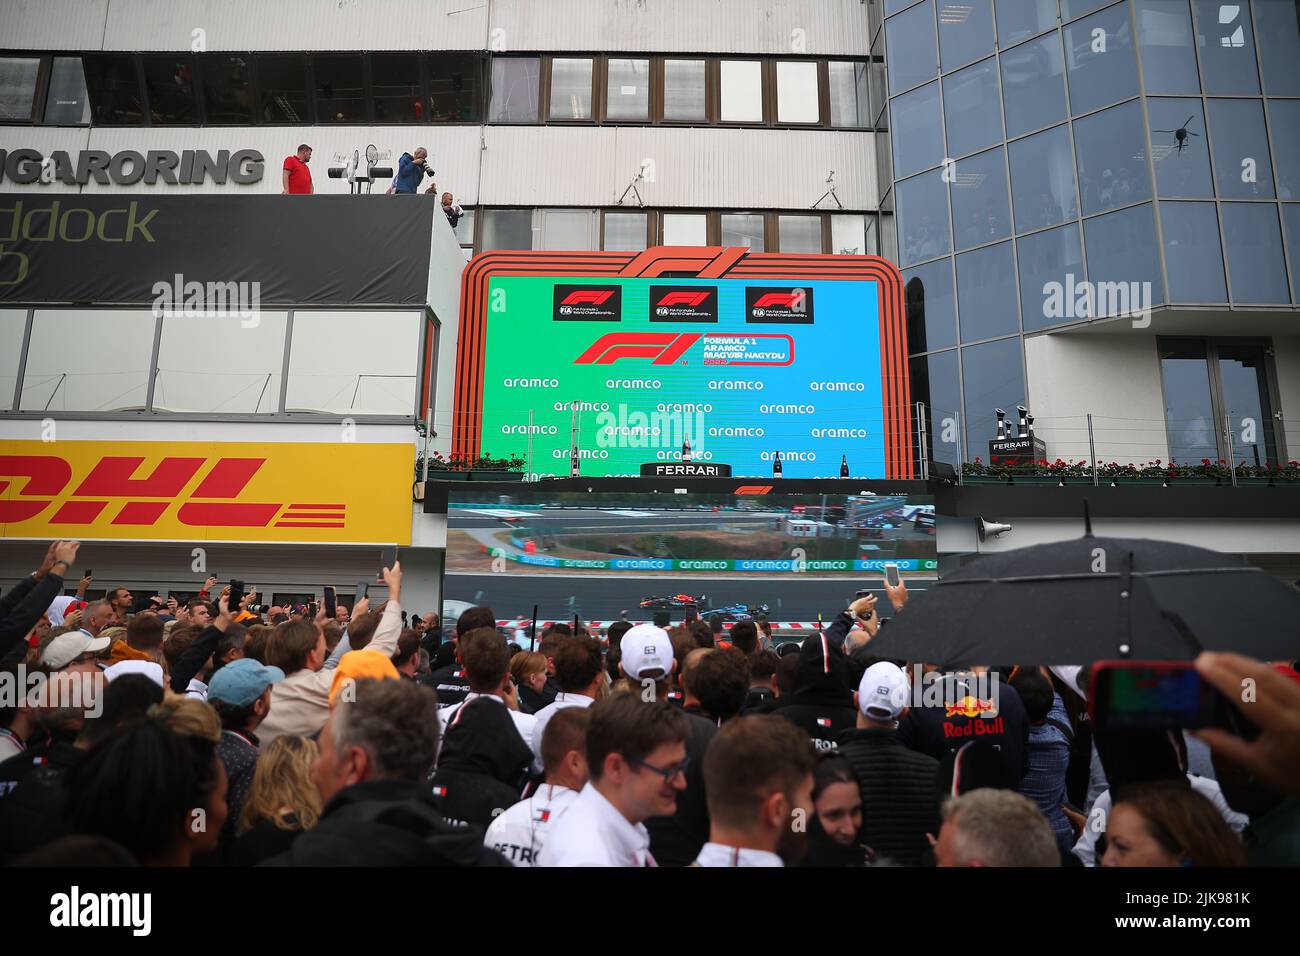 Podium pendant le GP hongrois, 28-31 juillet 2022 à Hungaroring, Formule 1 Championnat du monde 2022. Banque D'Images